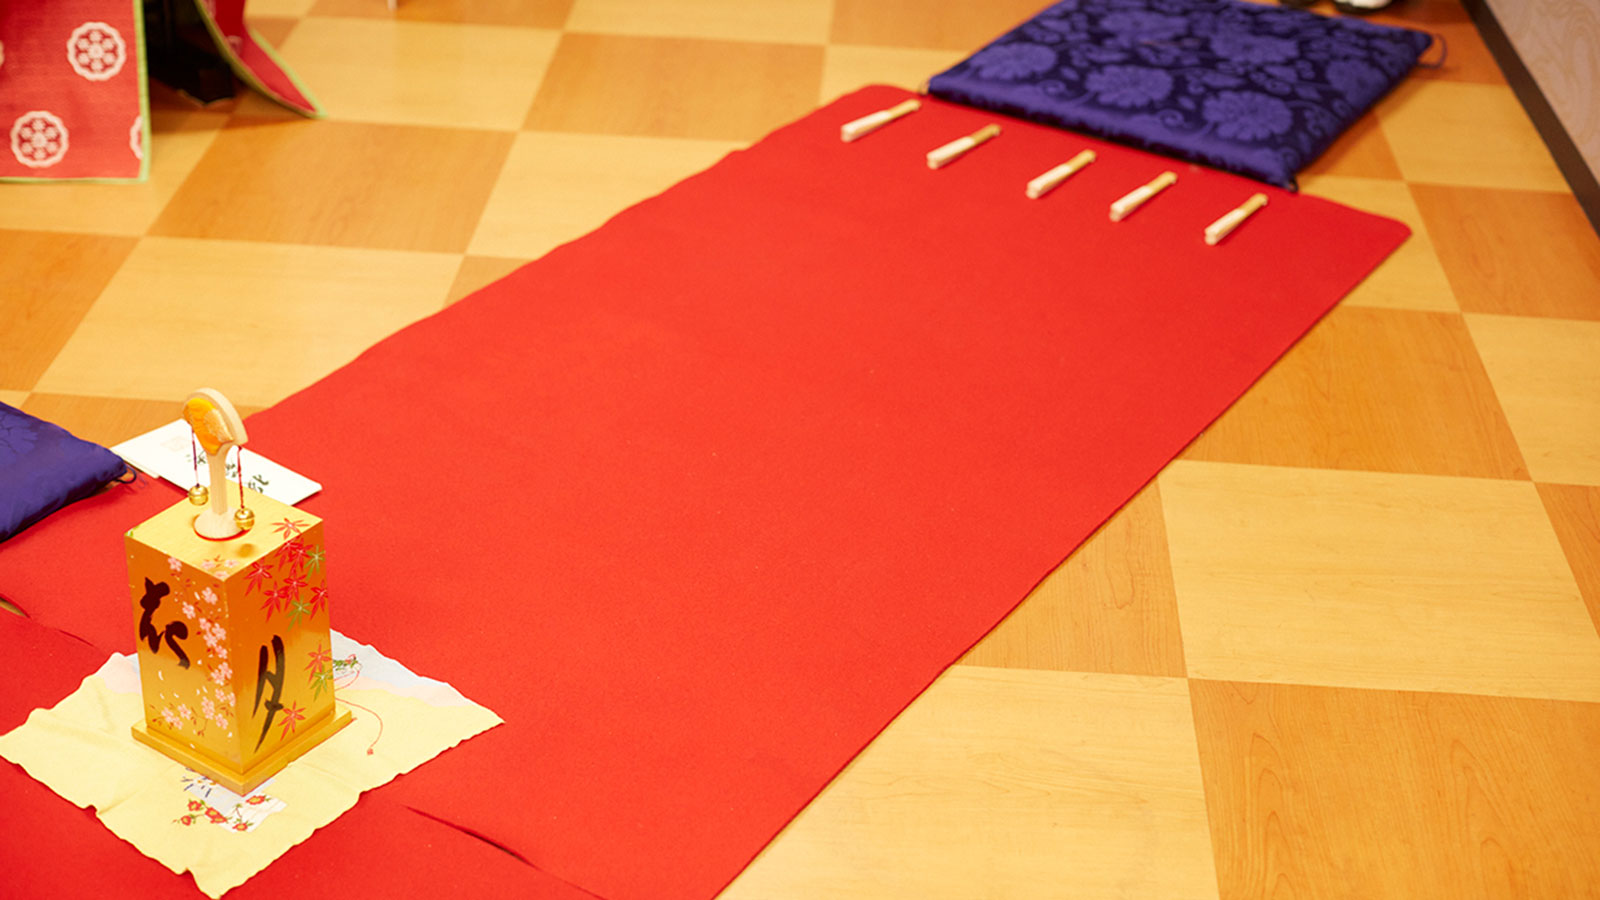 投扇興では、一畳分の緋毛氈2枚が縦に並んだ舞台使用する。